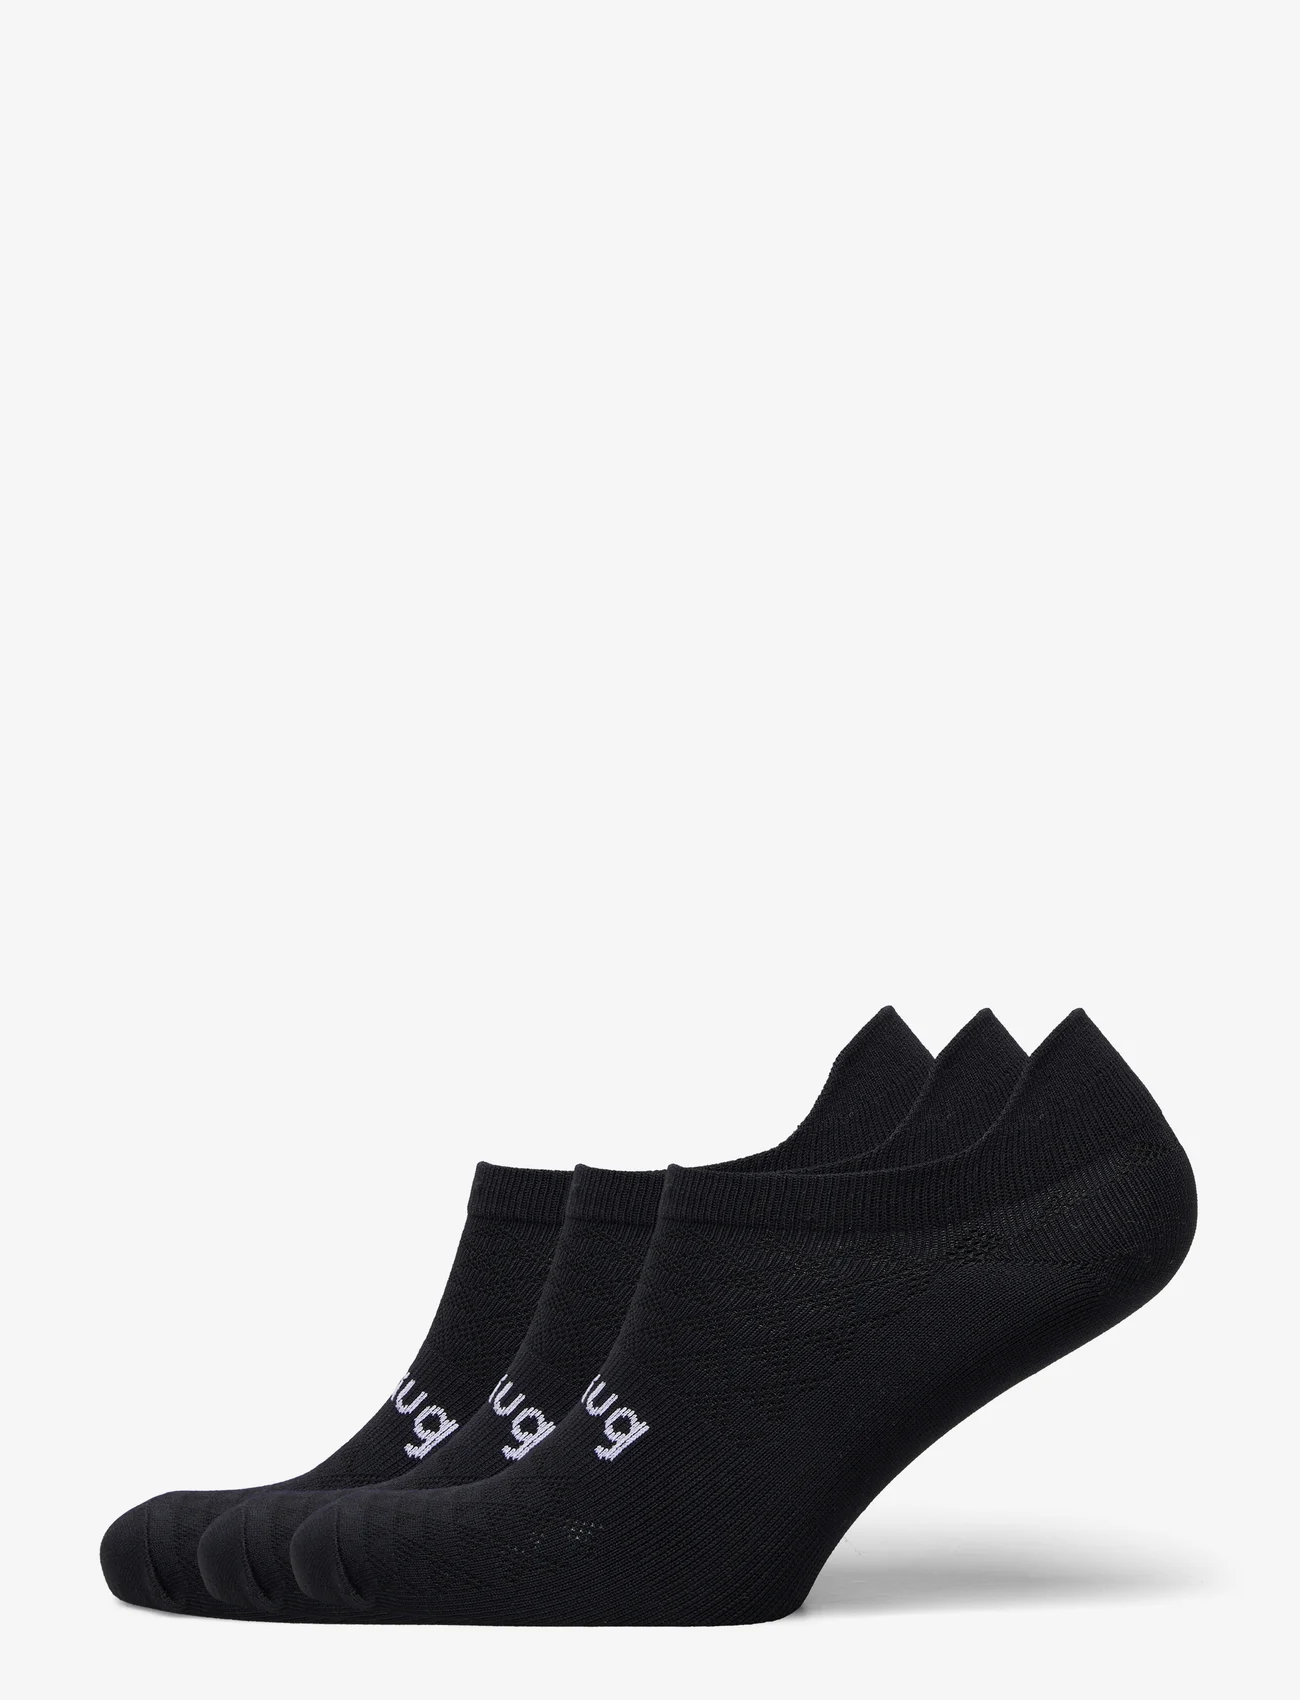 Johaug - Training Socks 3pk - mažiausios kainos - black - 0